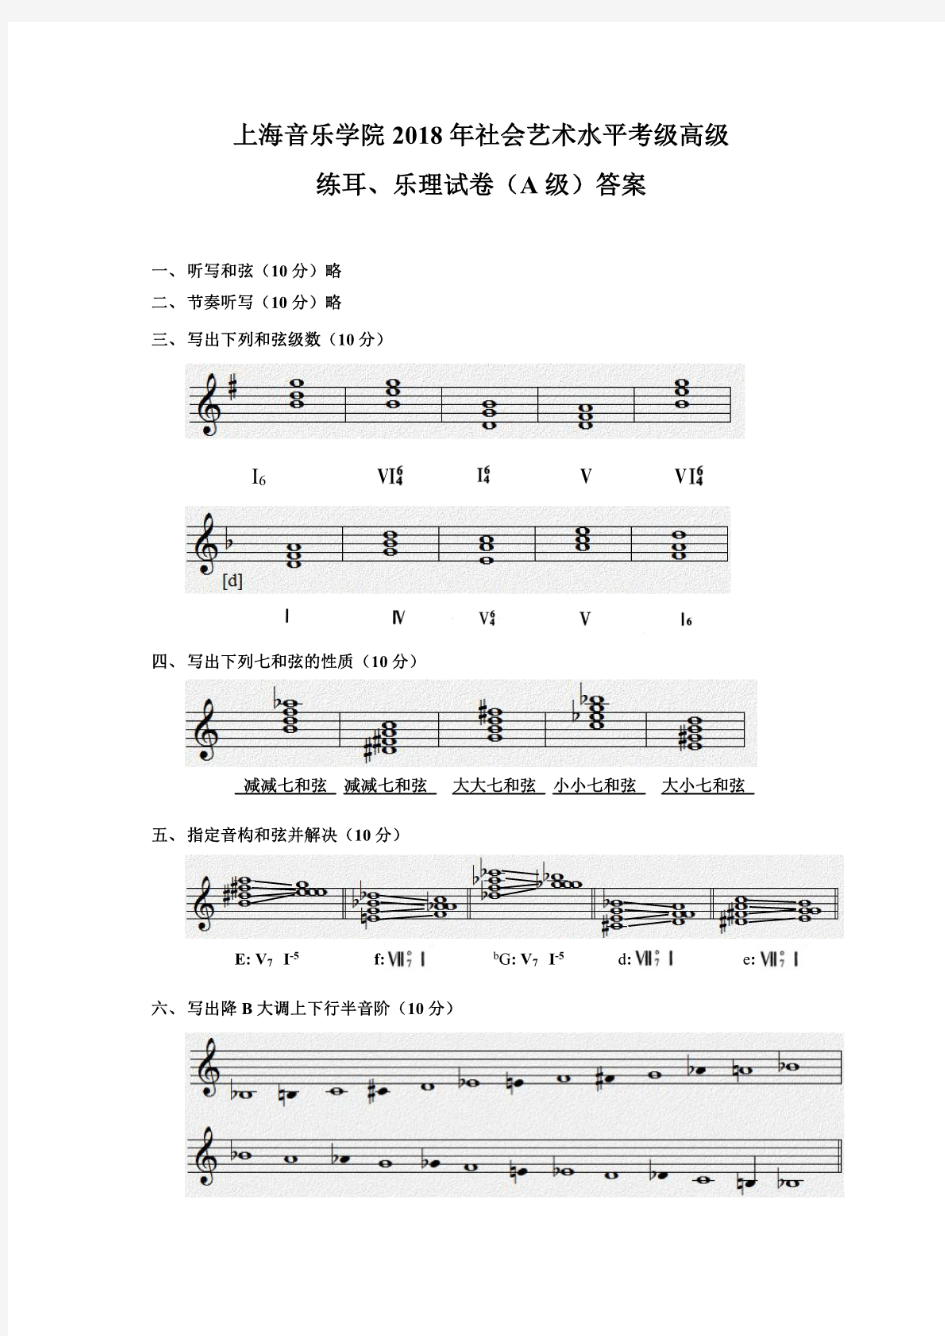 上海音乐学院2018年乐理考试A级(高级)试题【答案】